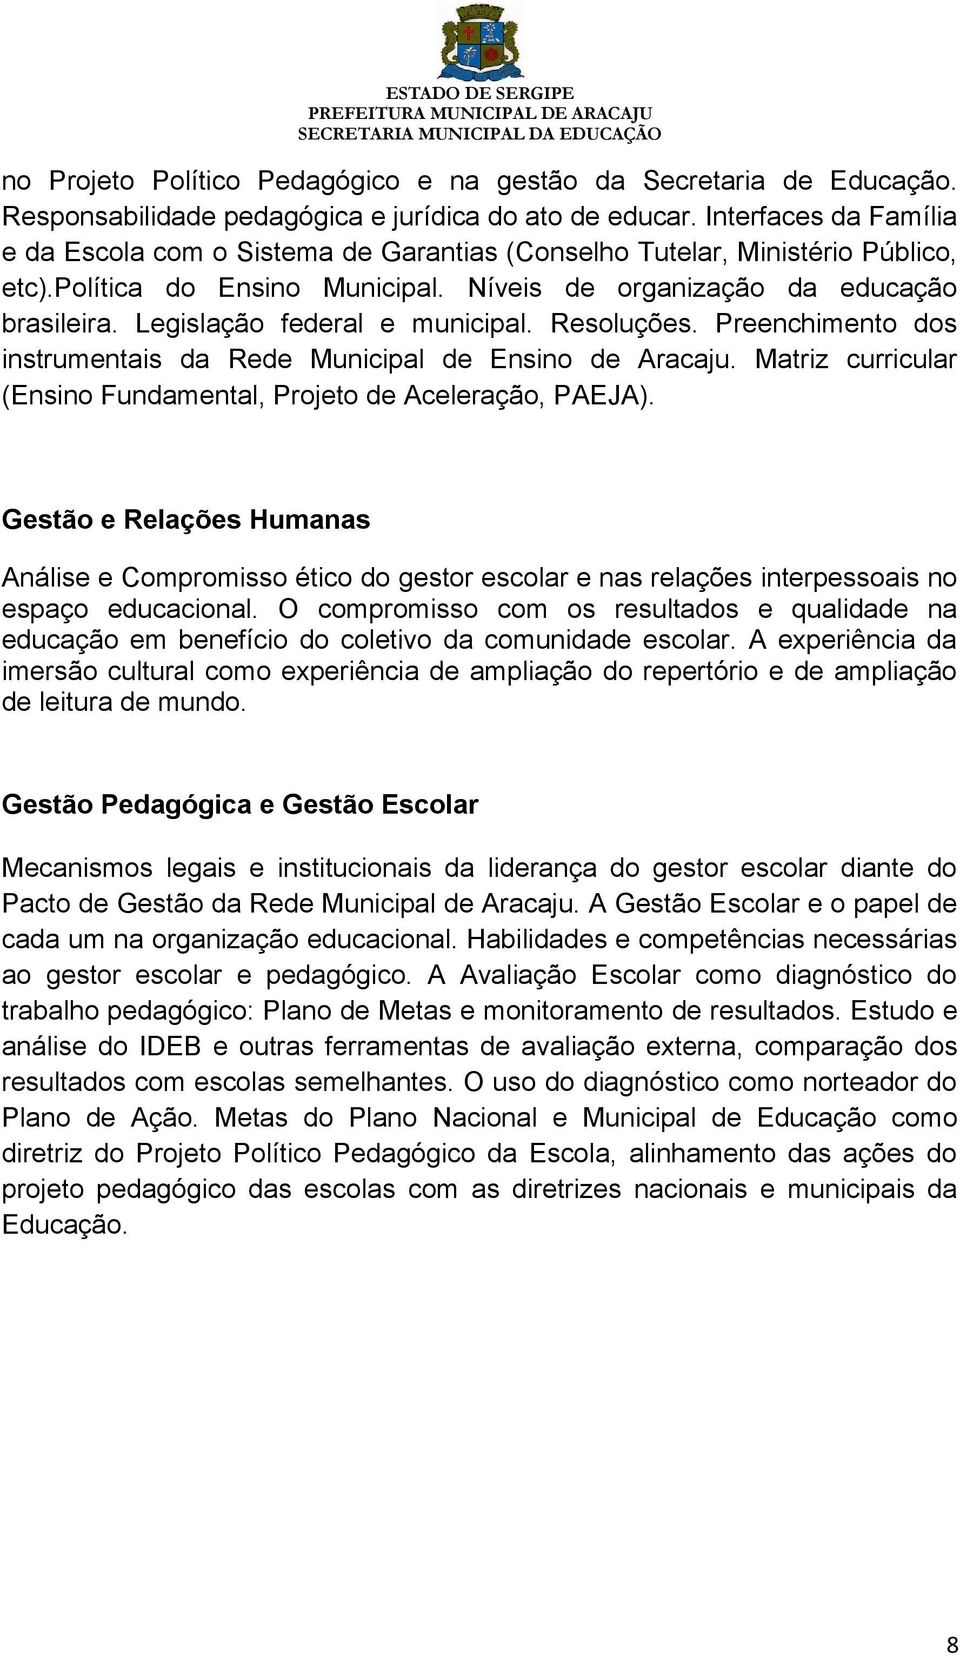 Legislação federal e municipal. Resoluções. Preenchimento dos instrumentais da Rede Municipal de Ensino de Aracaju. Matriz curricular (Ensino Fundamental, Projeto de Aceleração, PAEJA).